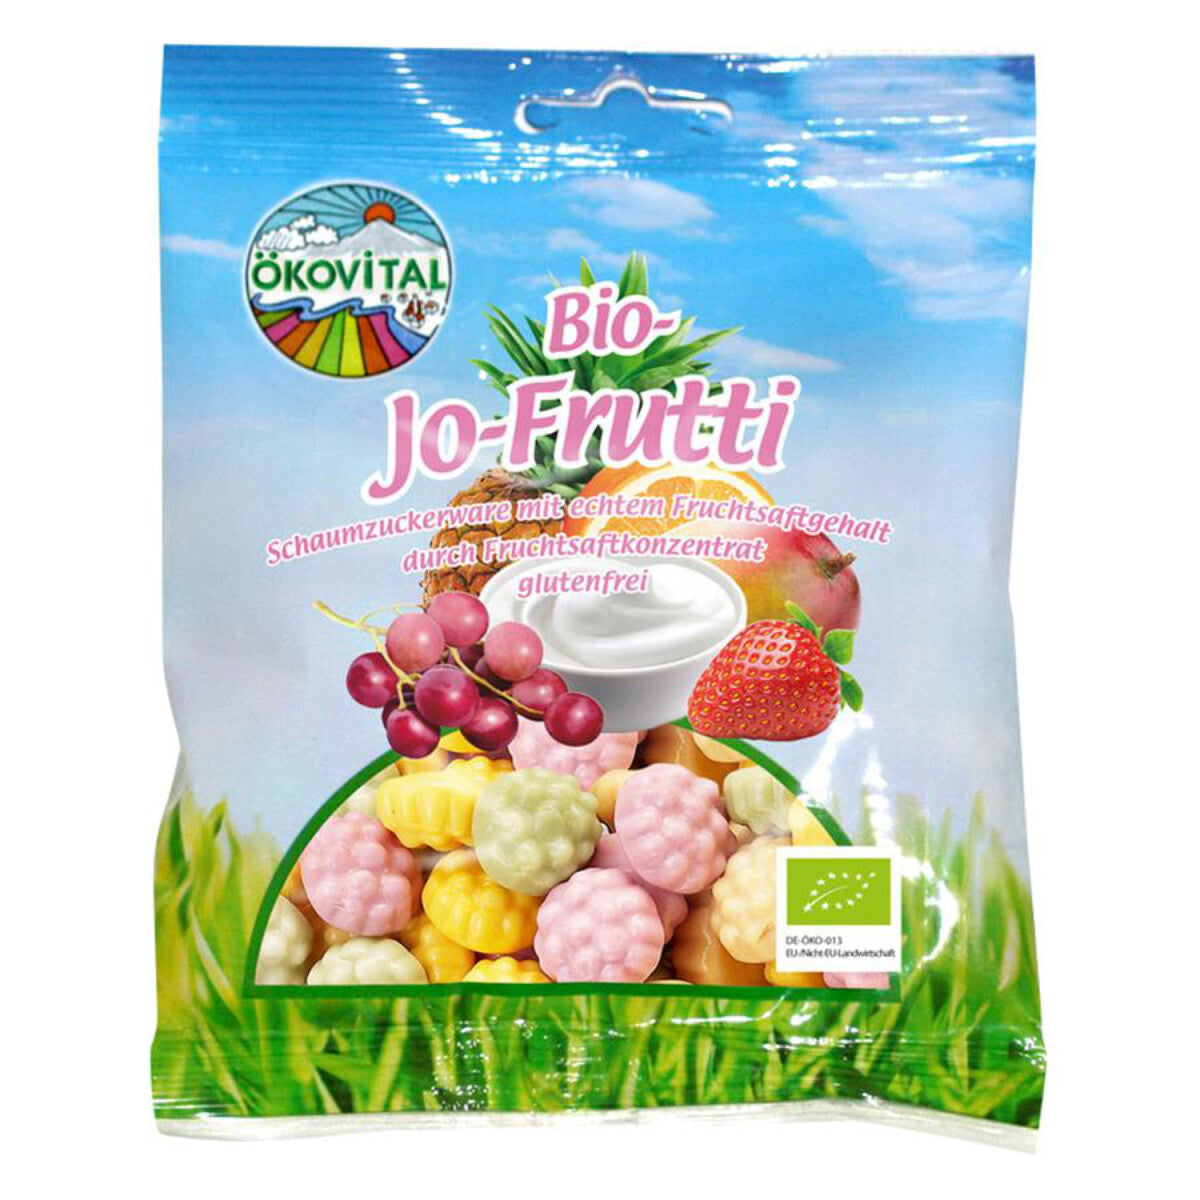 ÖKOVITAL RÖSNER Jo-Frutti - 80 g